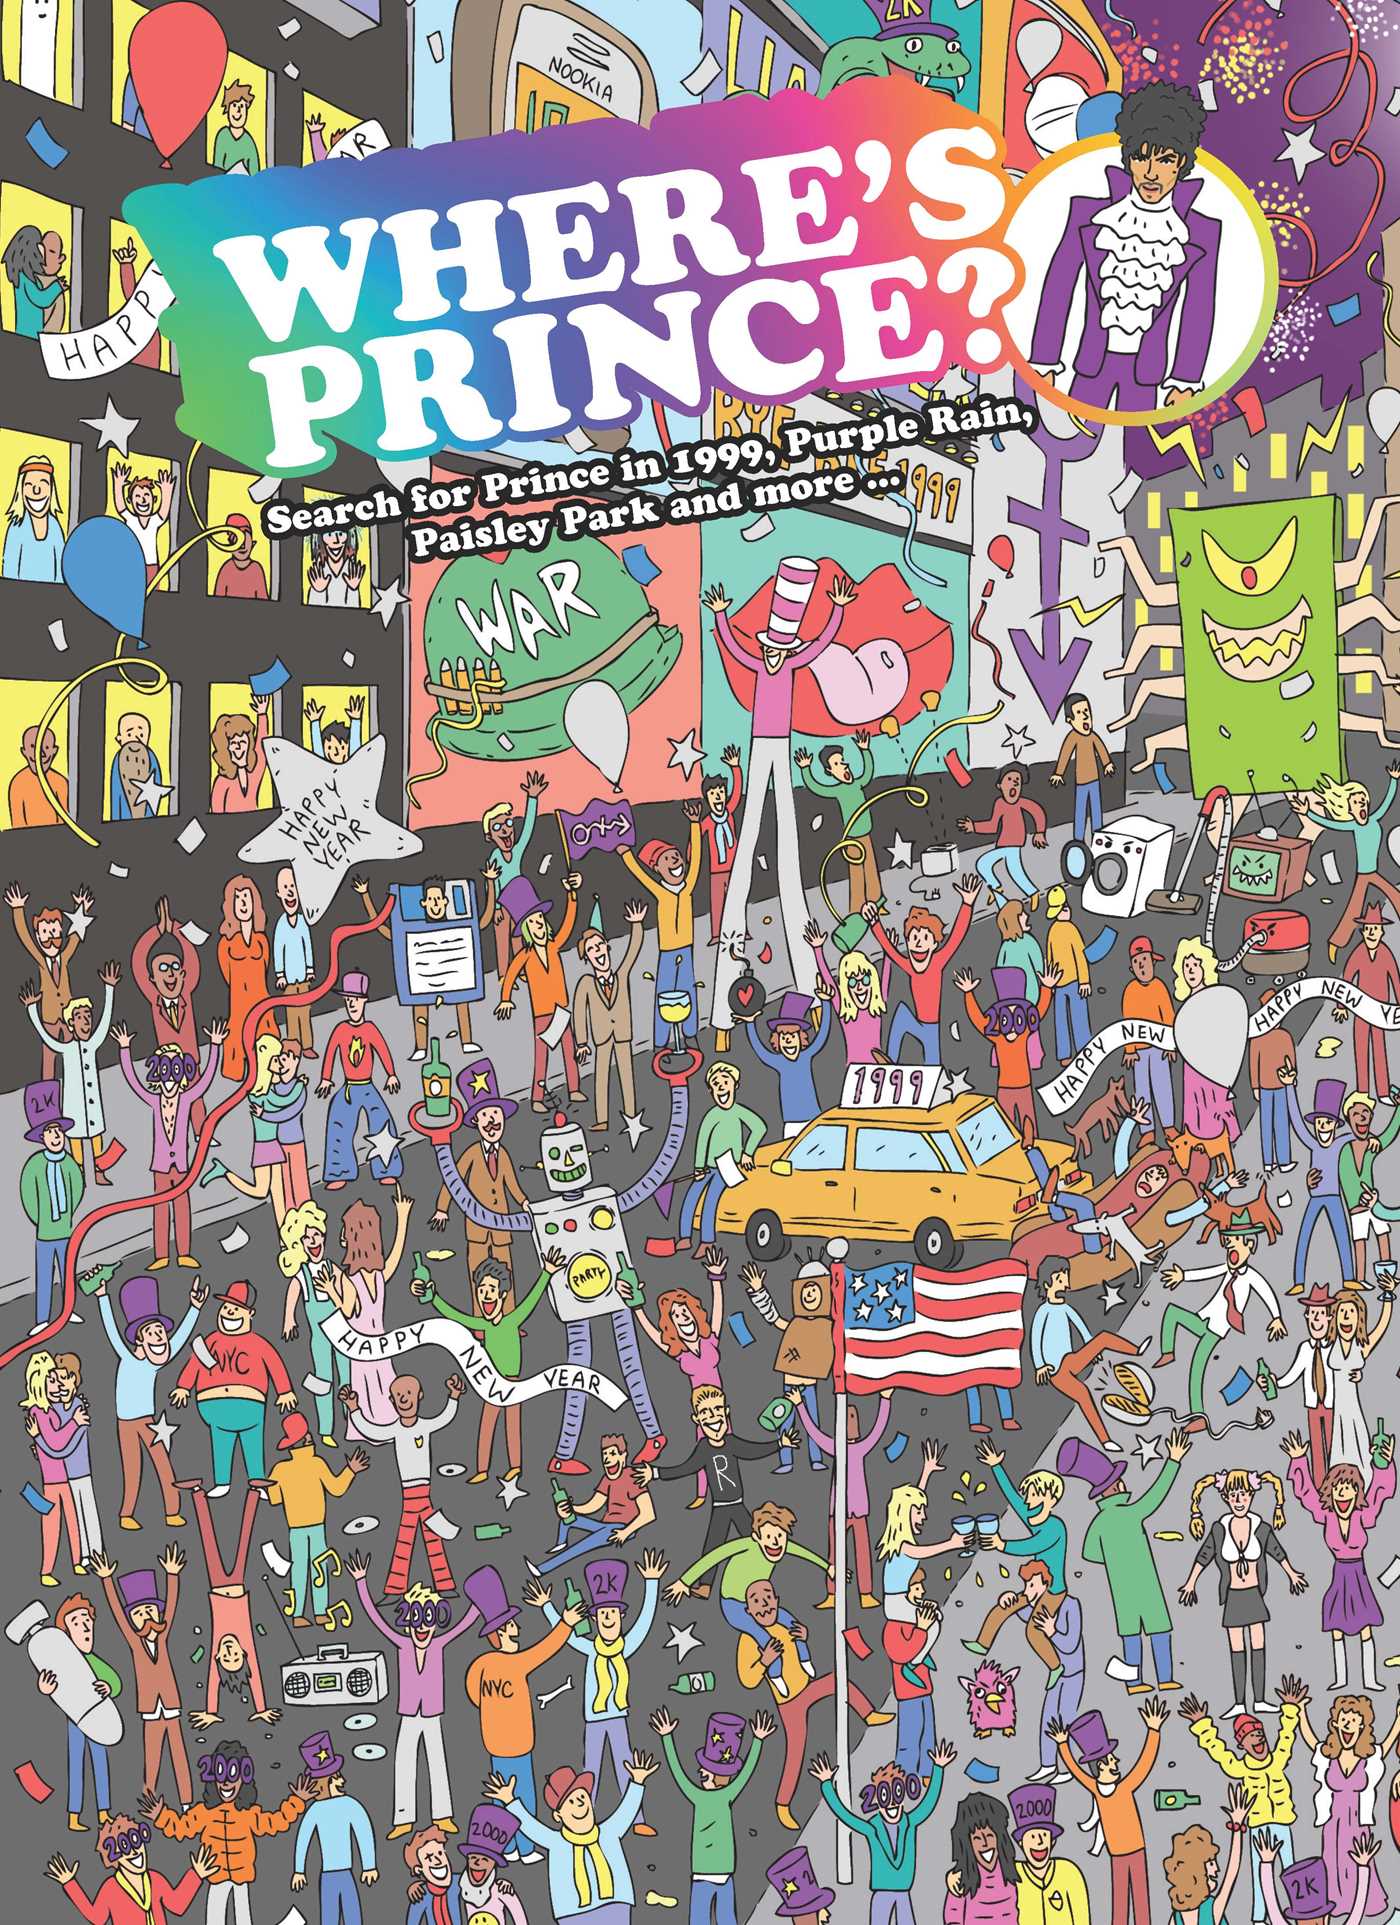 Wheres Prince